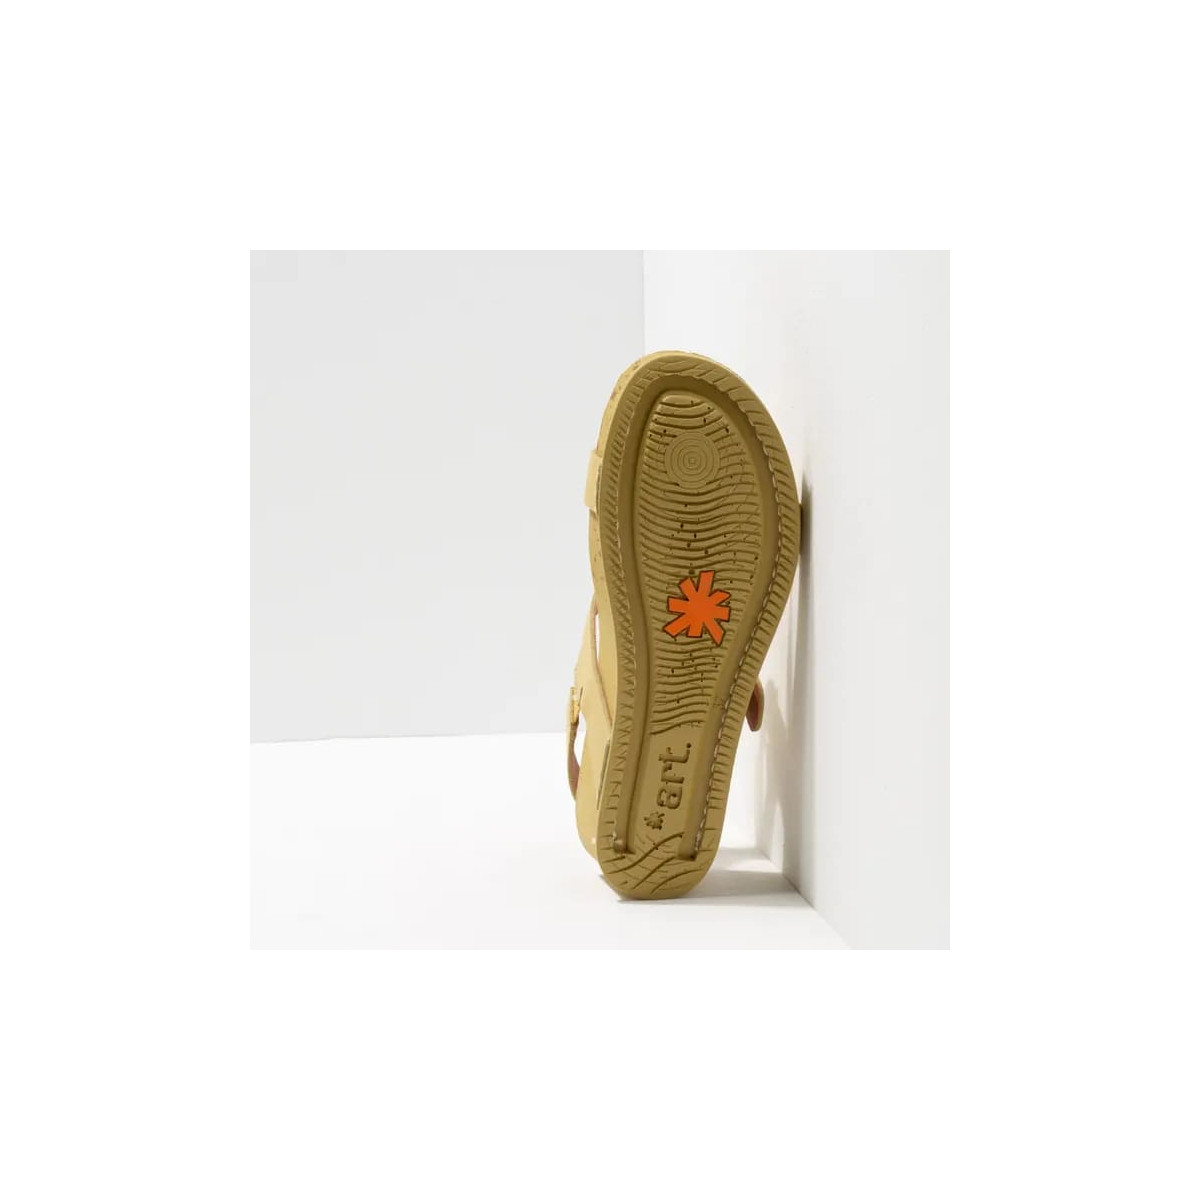 Sandales compensées en cuir à talon moucheté - Jaune Pâle - art